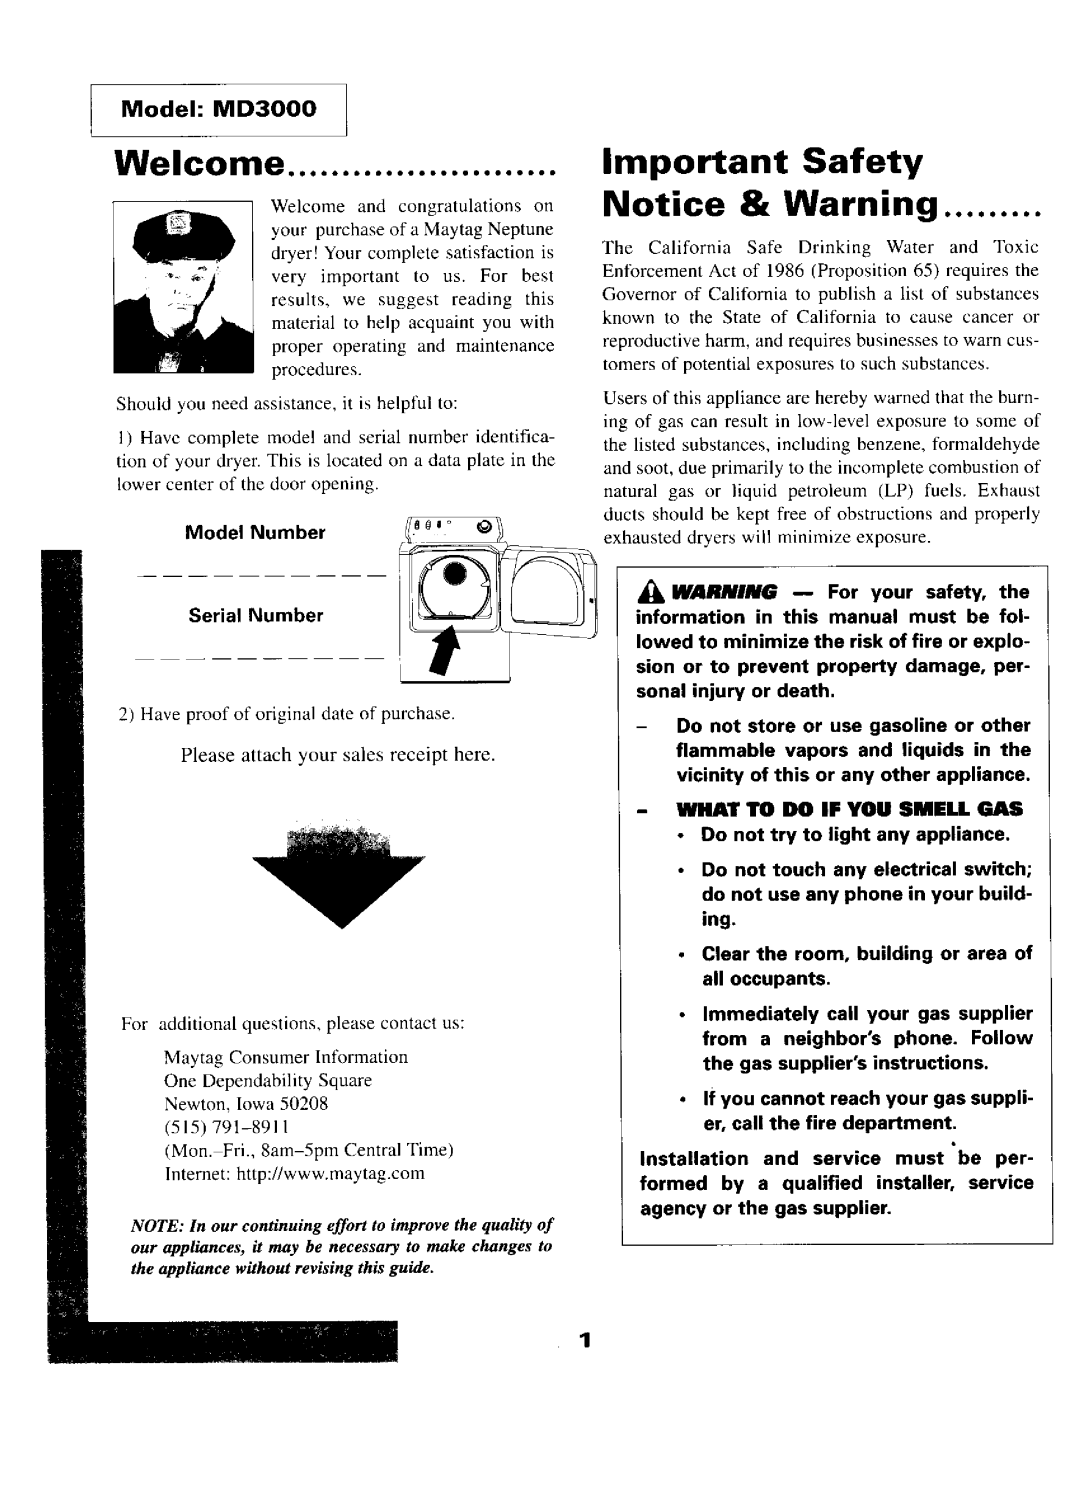 Maytag D-5 manual 